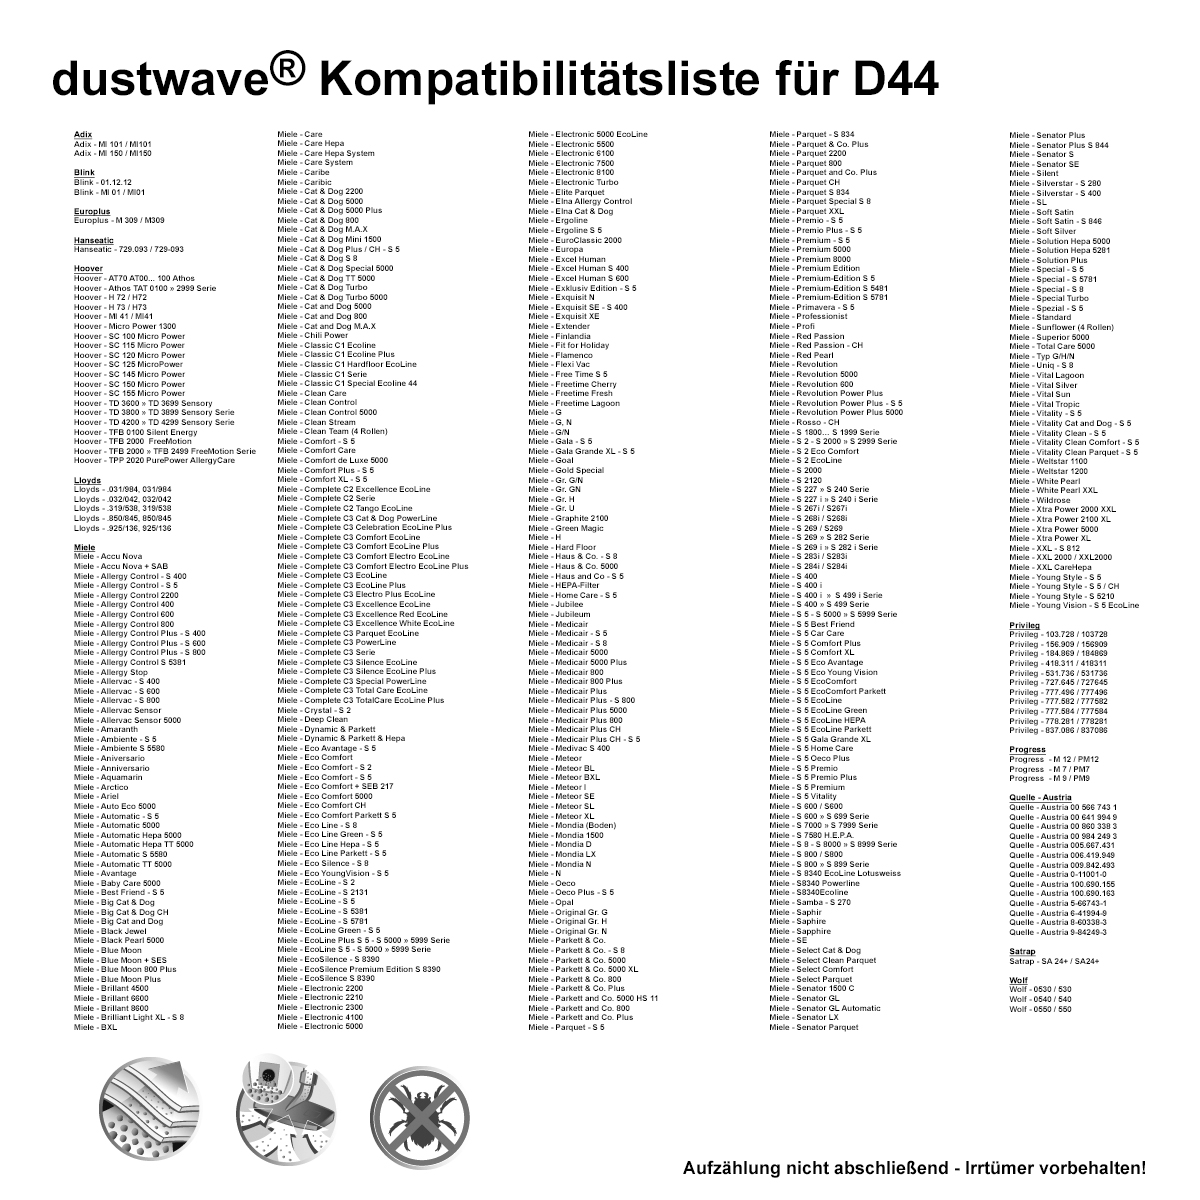 1 Staubsaugerbeutel | Staubbeutel passend für Miele: S 8340 Parquet XL EcoLine / S 8340 PowerLine von dustwave® Markenstaubbeutel - Made in Germany + inkl. Microfilter